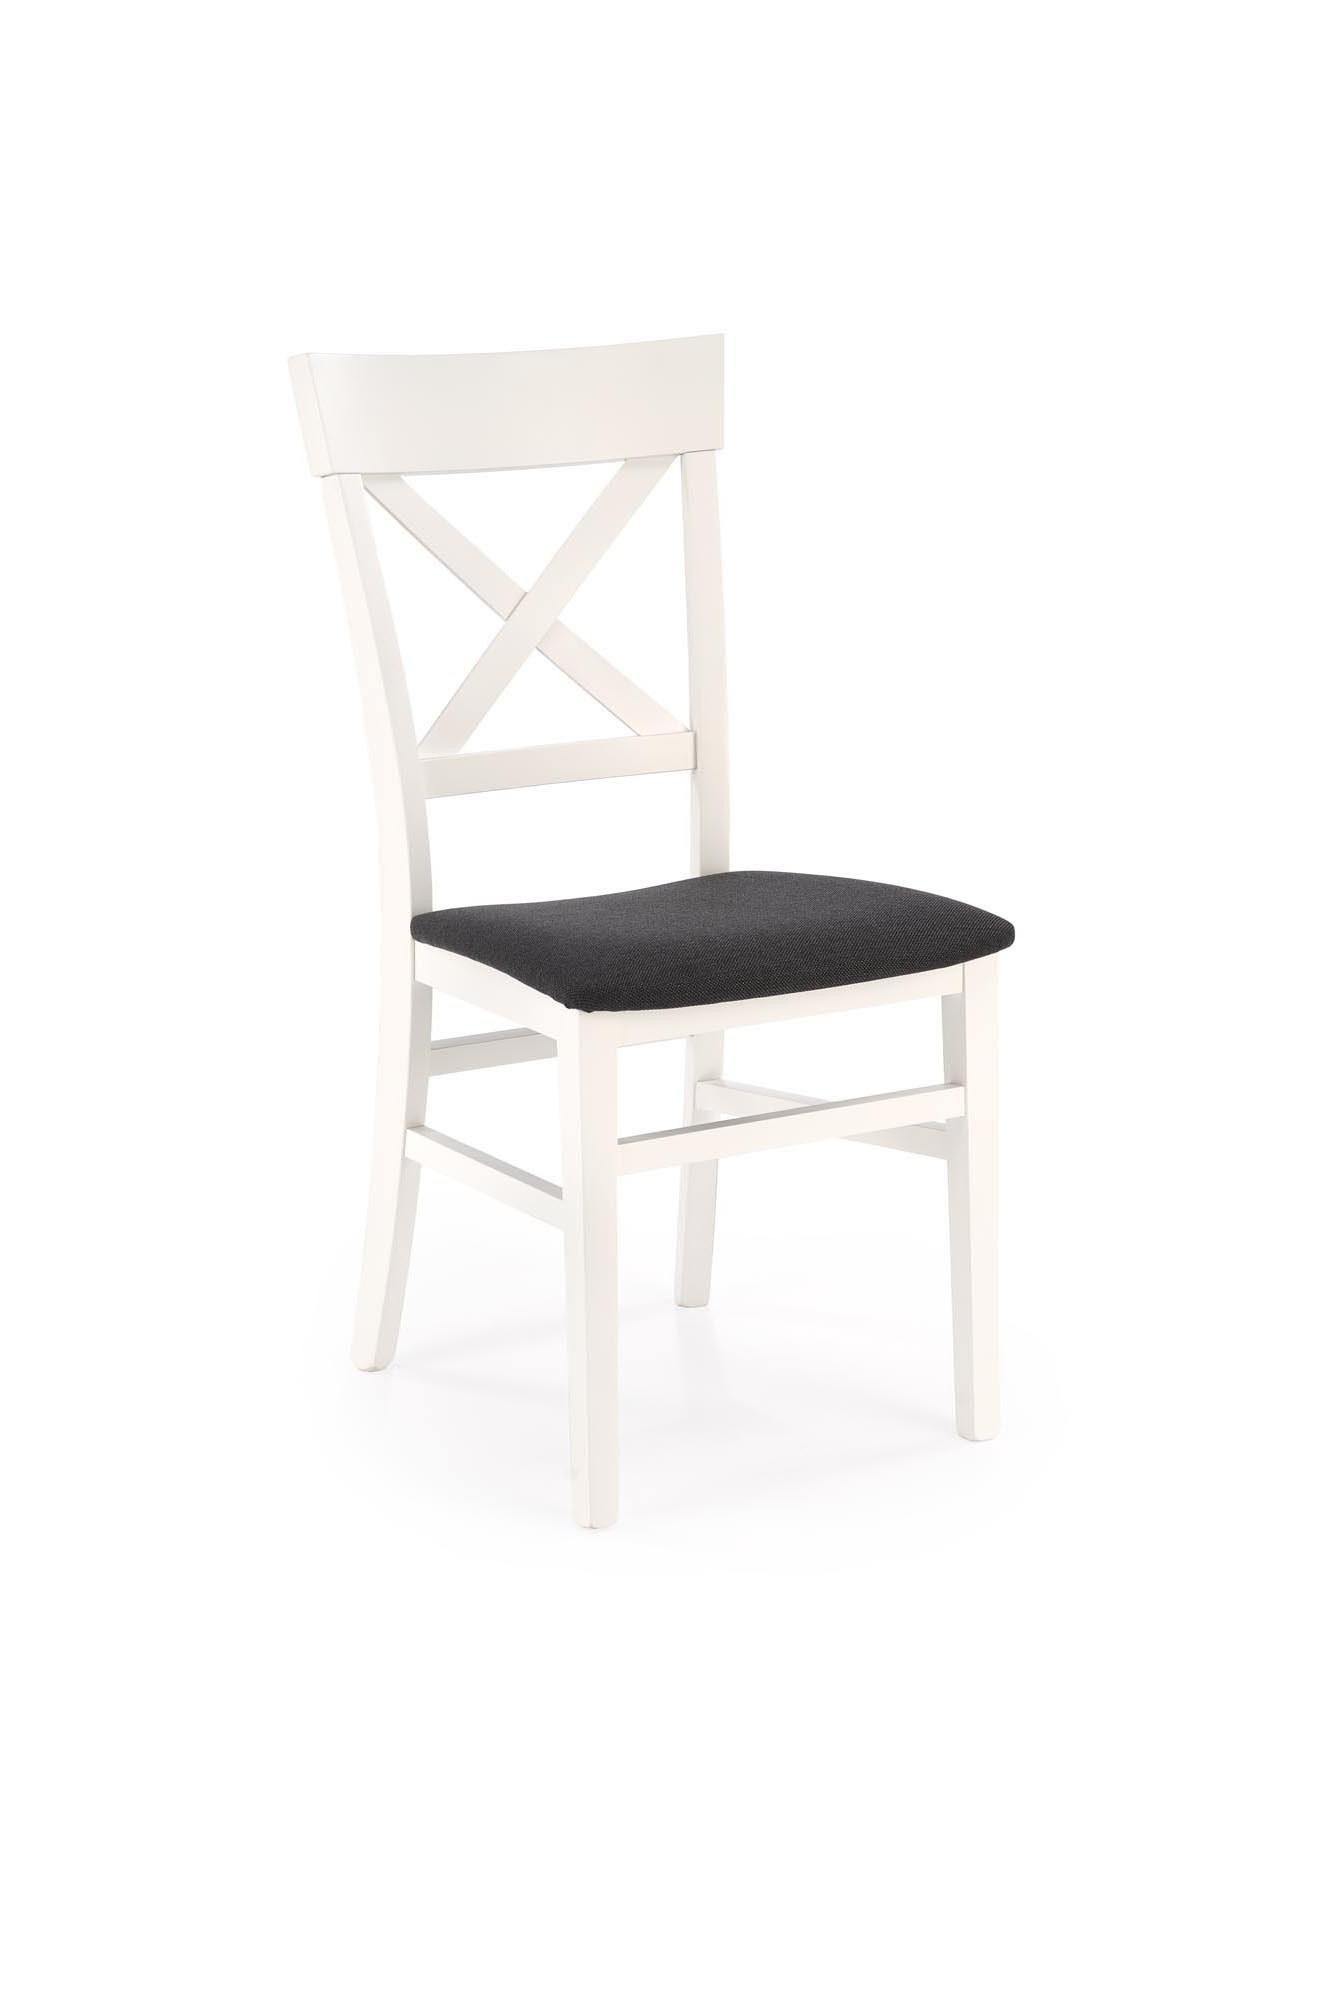 TUTTI 2 krzesło biały / tap: Inari 95